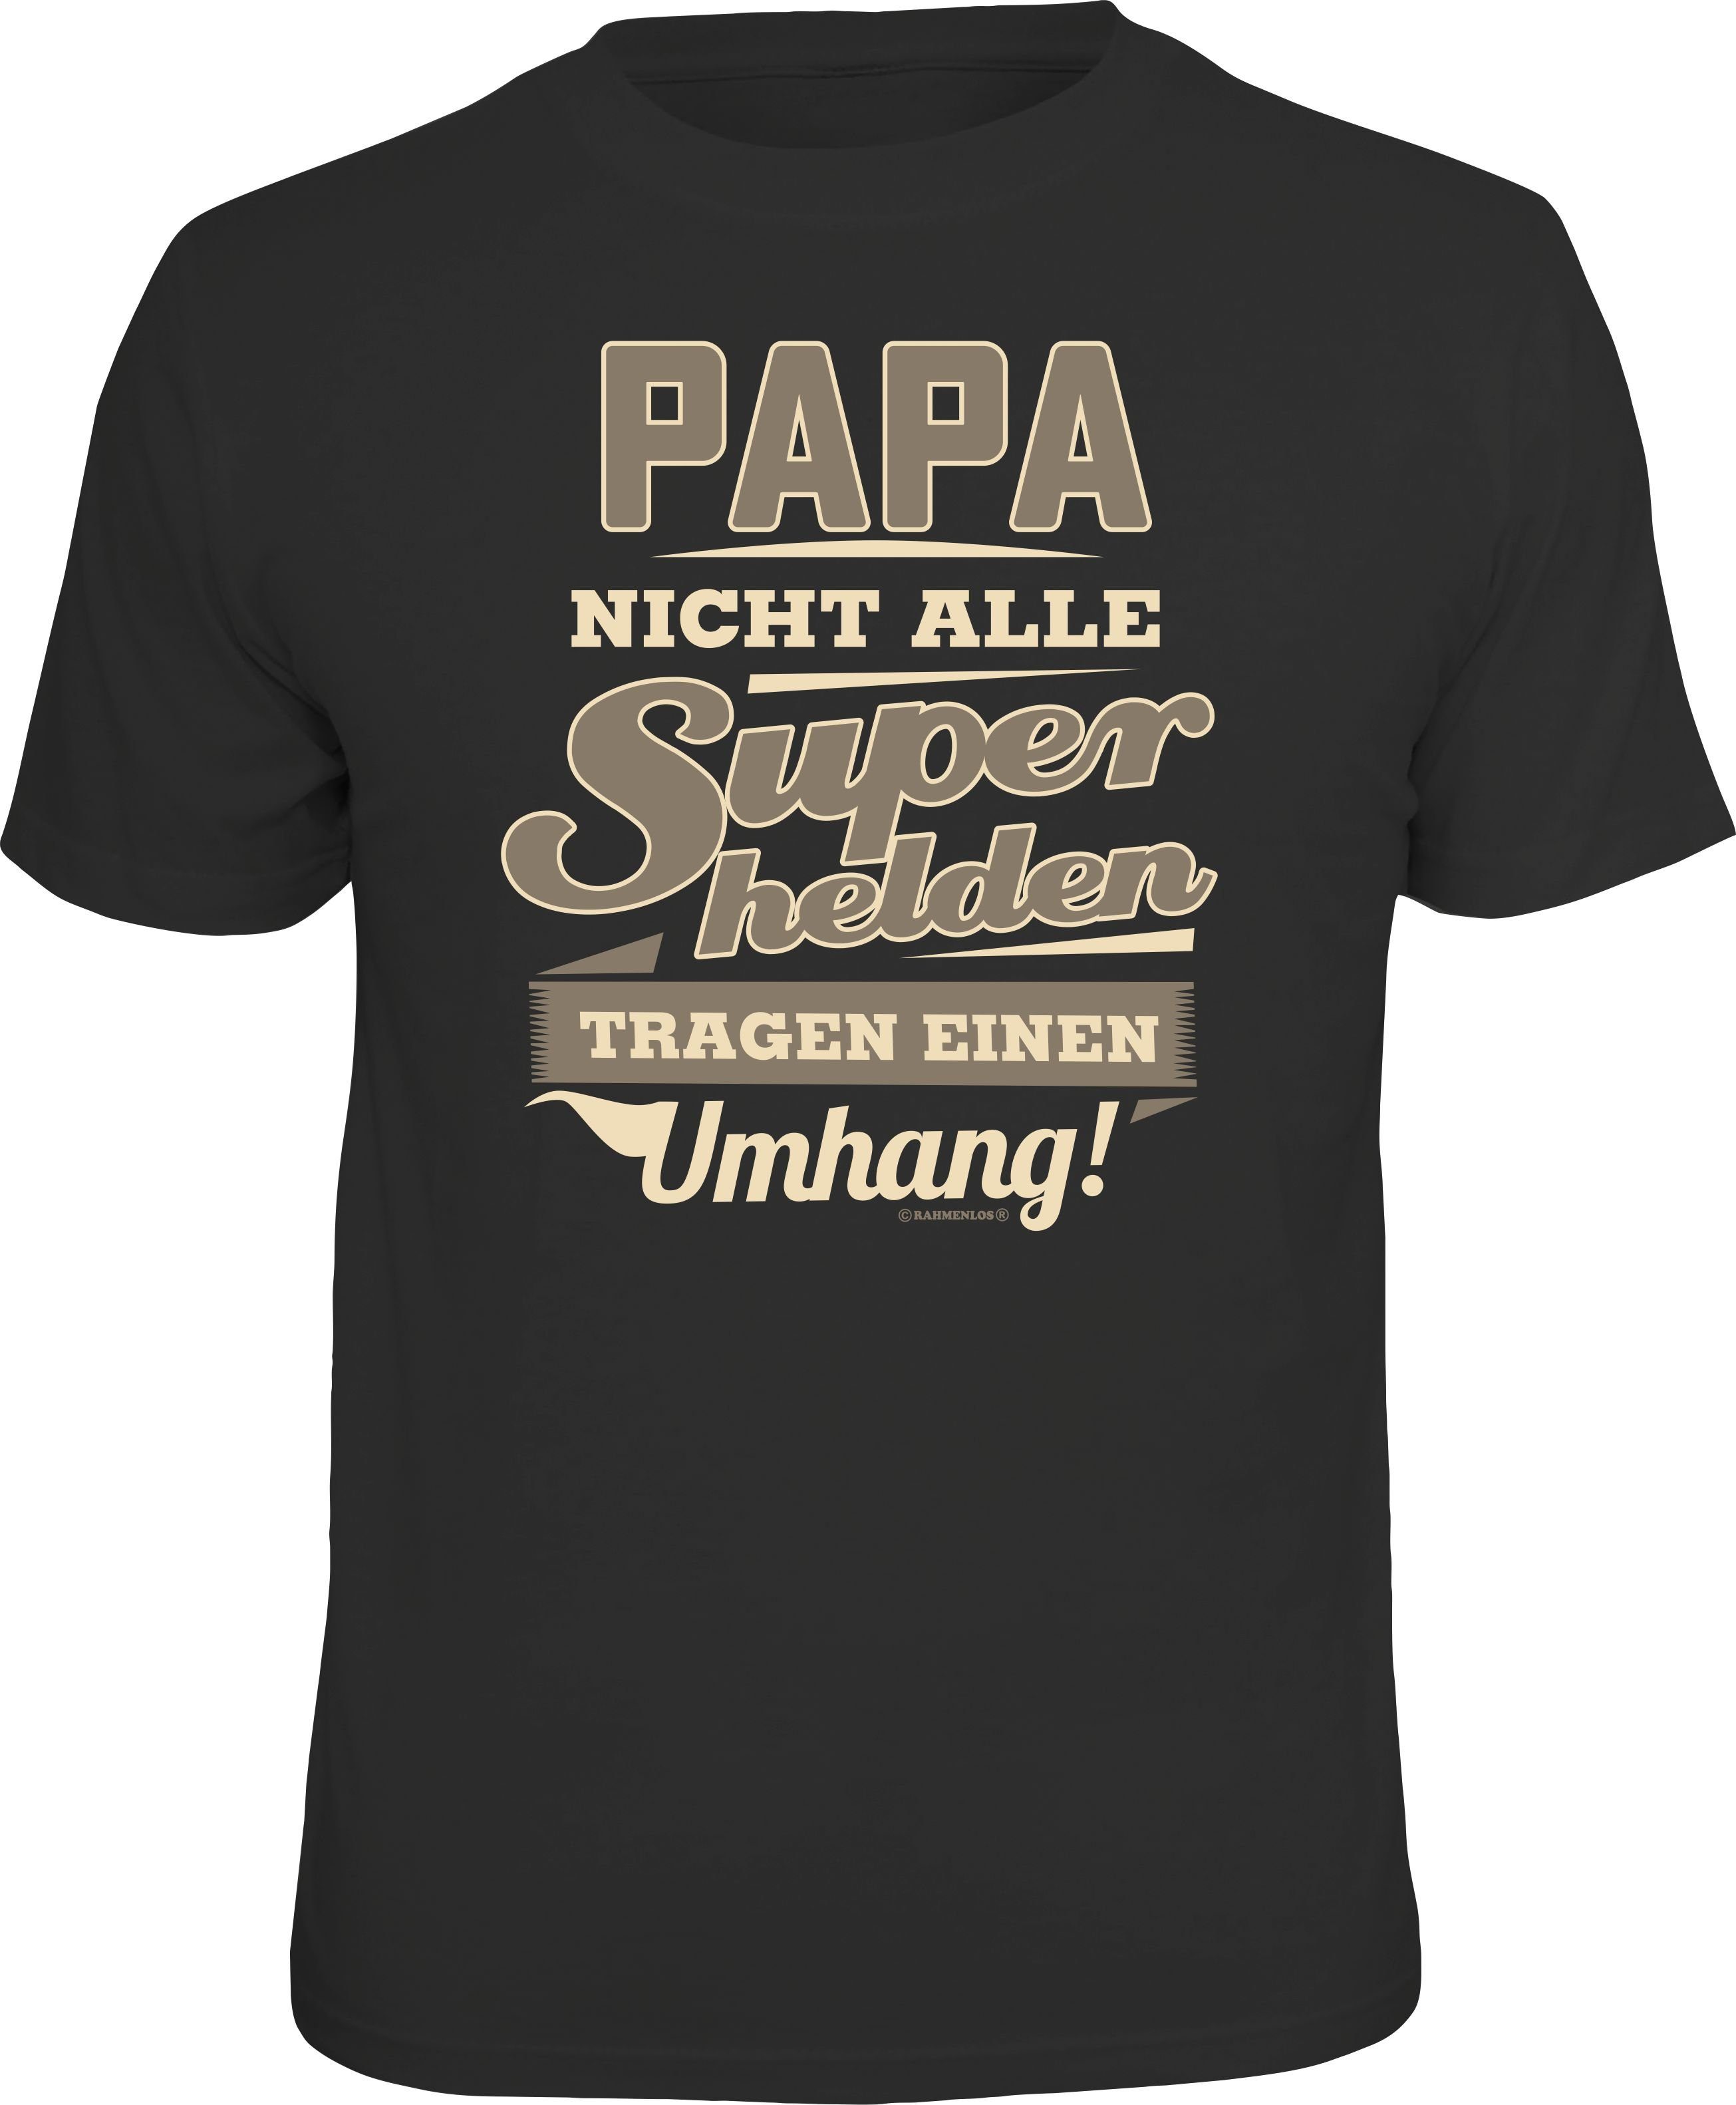 Rahmenlos T-Shirt Das Geschenk für Väter - Papa Superheld